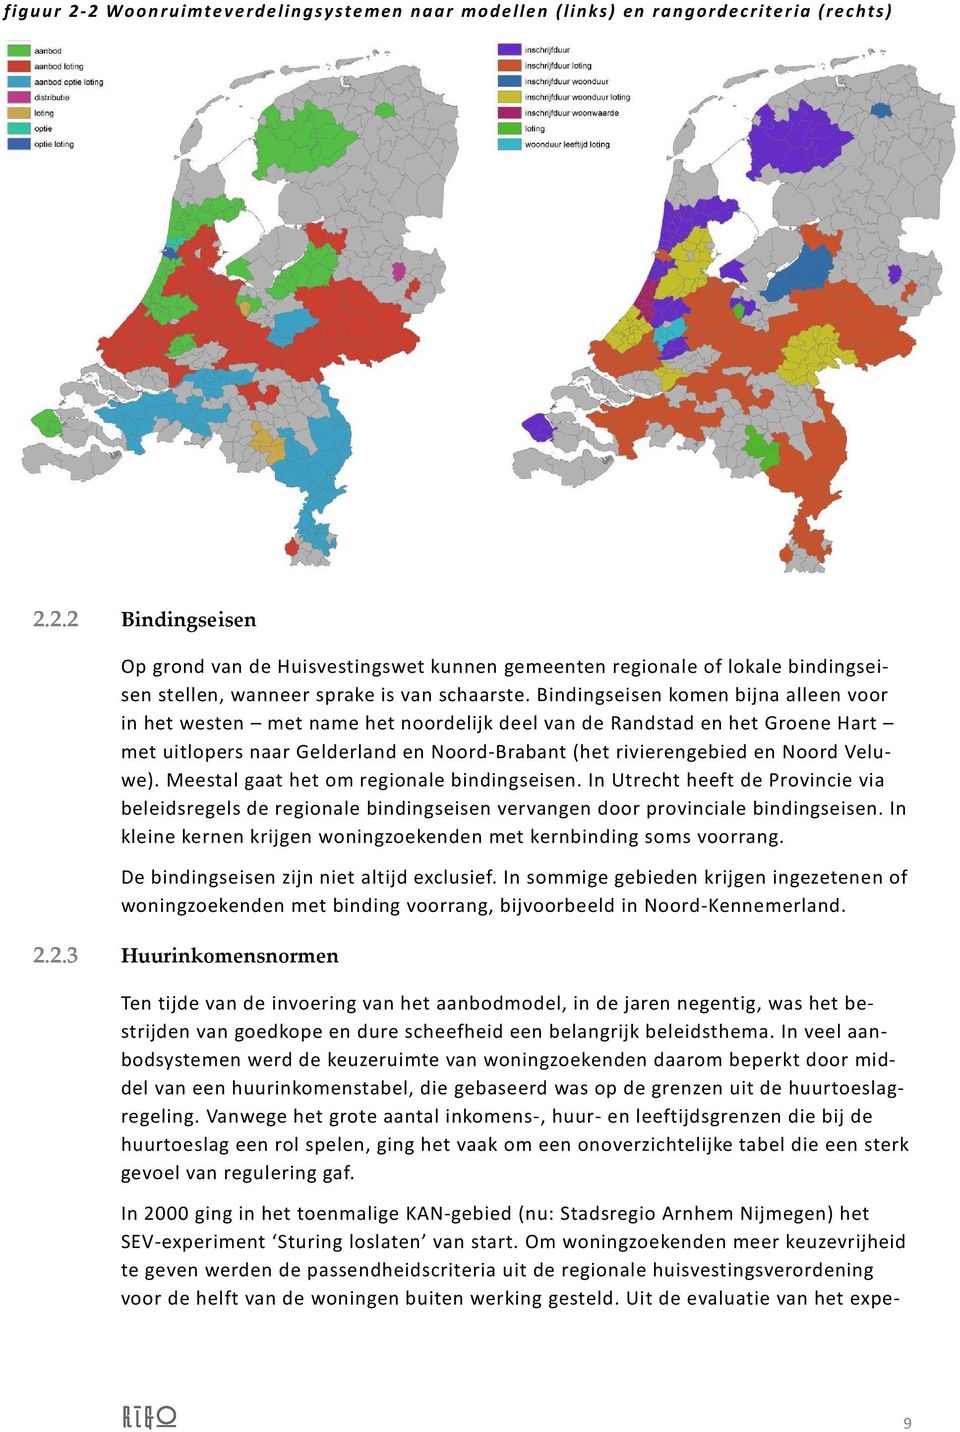 Meestal gaat het om regionale bindingseisen. In Utrecht heeft de Provincie via beleidsregels de regionale bindingseisen vervangen door provinciale bindingseisen.